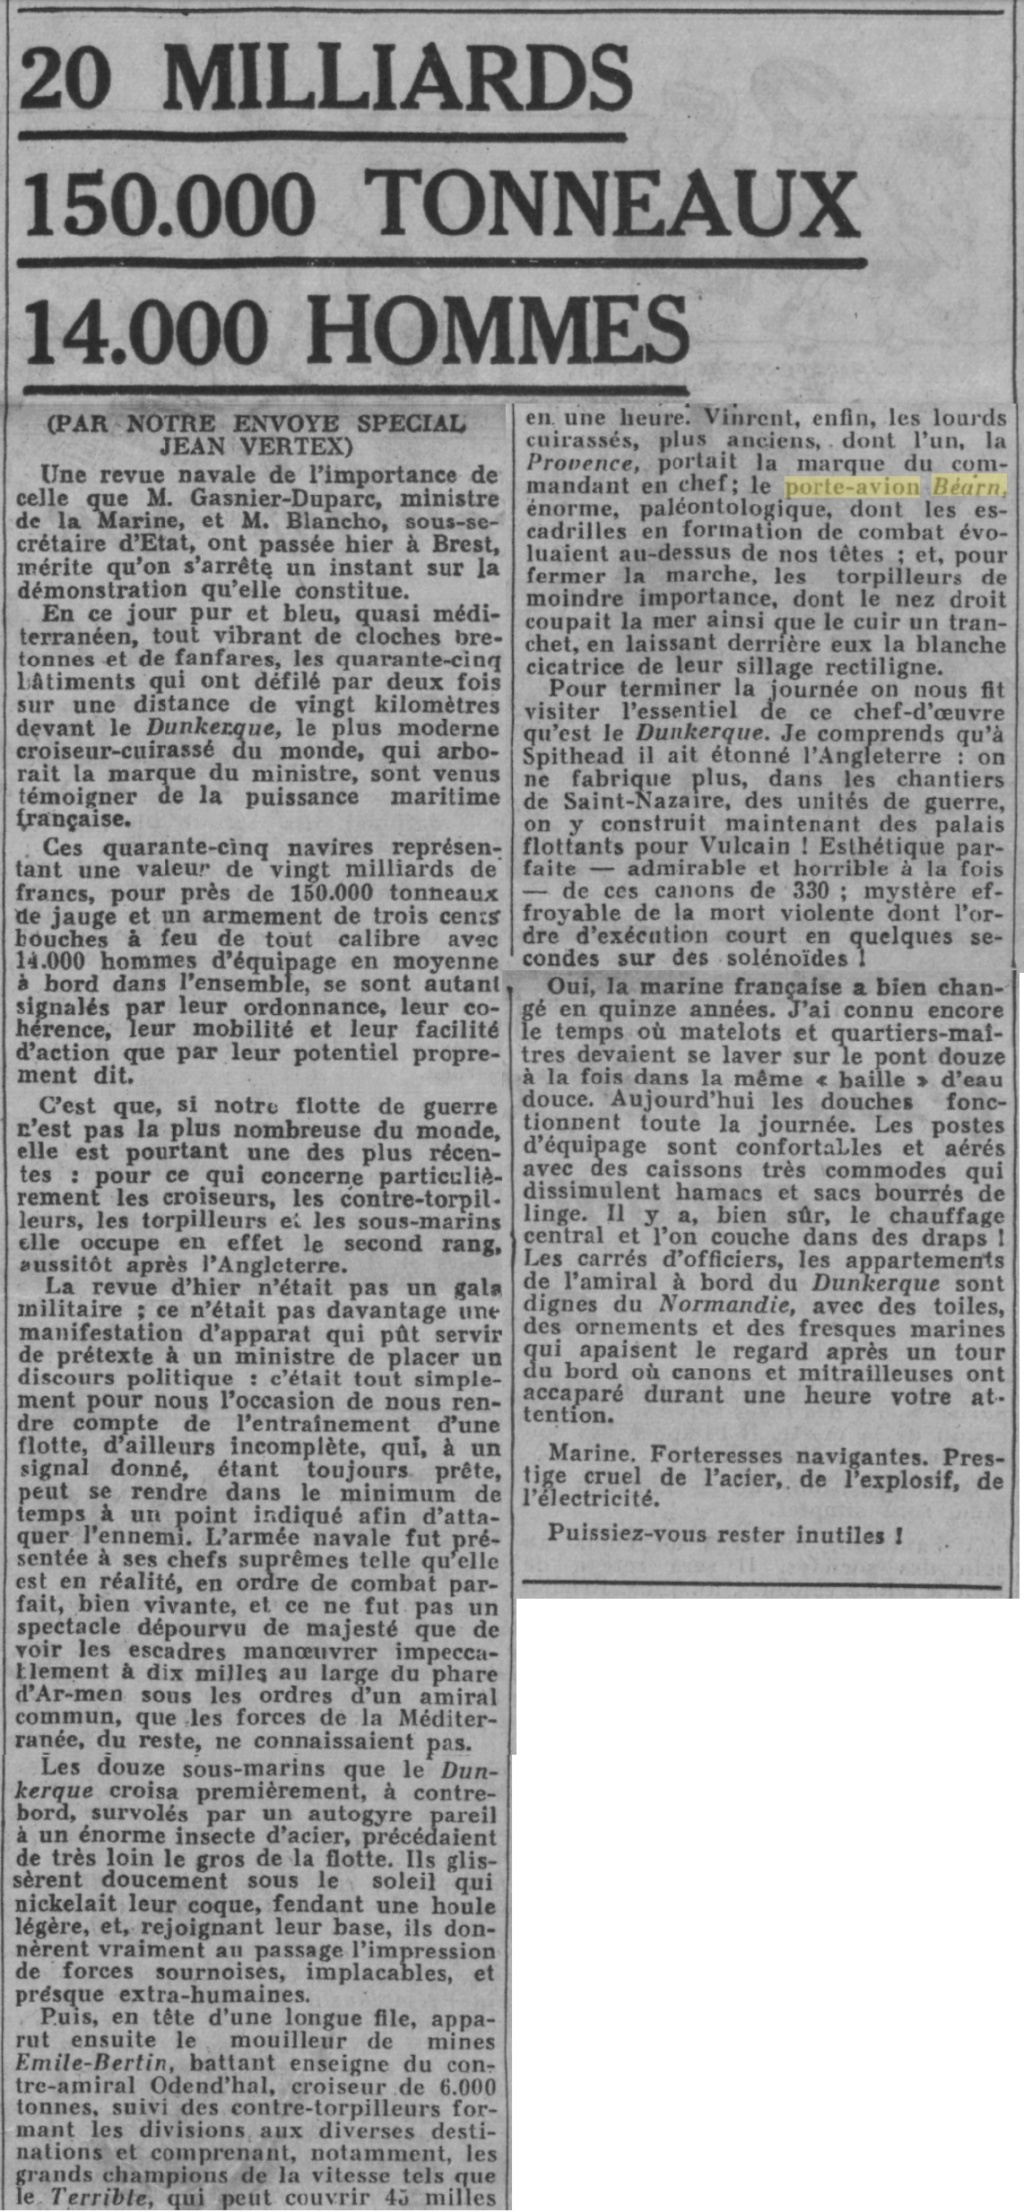  L'actualité du navire Béarn au travers de la presse (années 36 à 39)   19370529